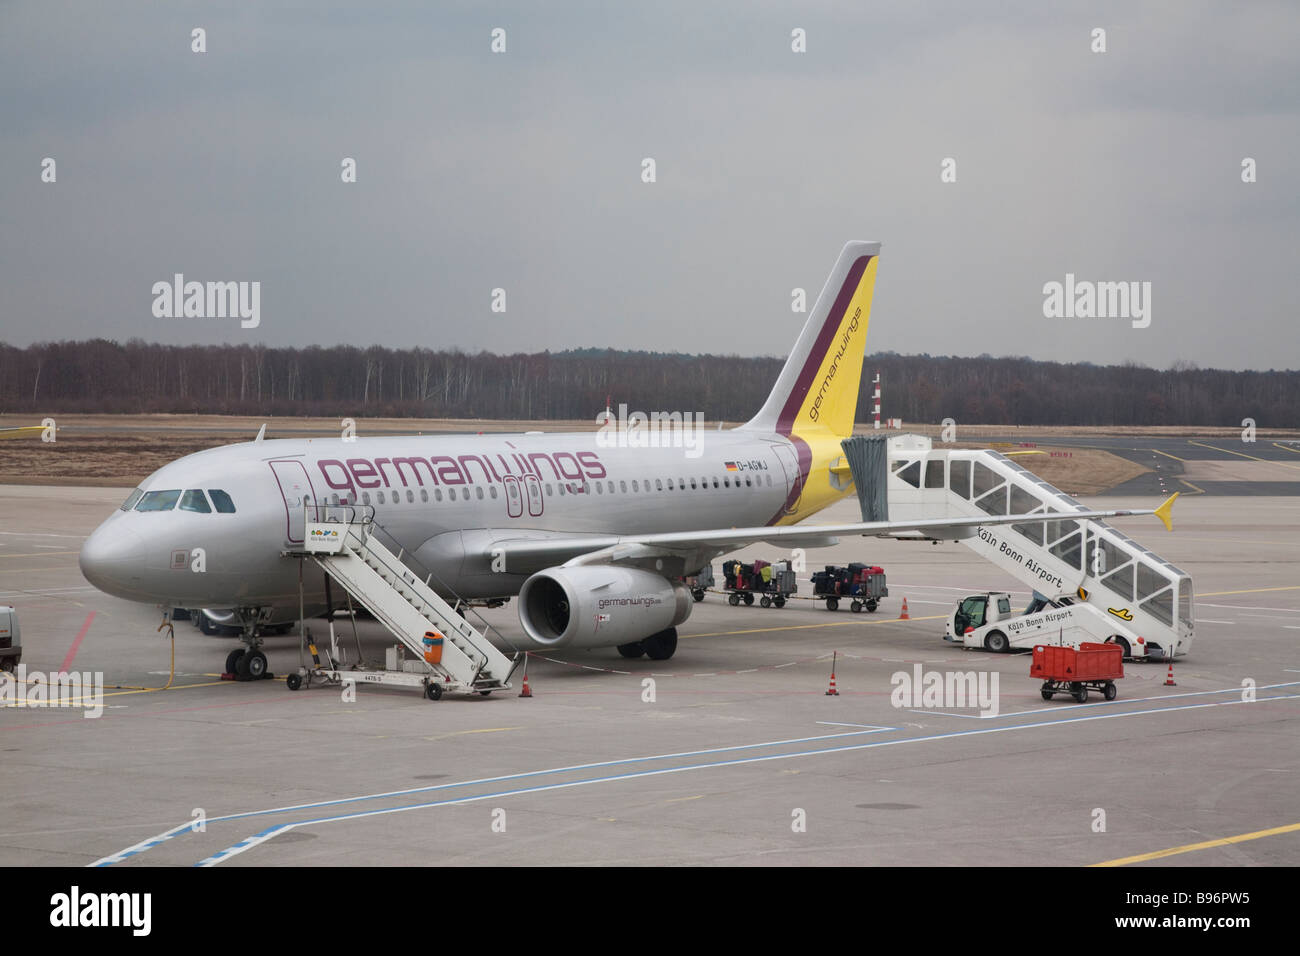 Le roulage de l'avion Germanwings à Cologne Bonn Airport Banque D'Images